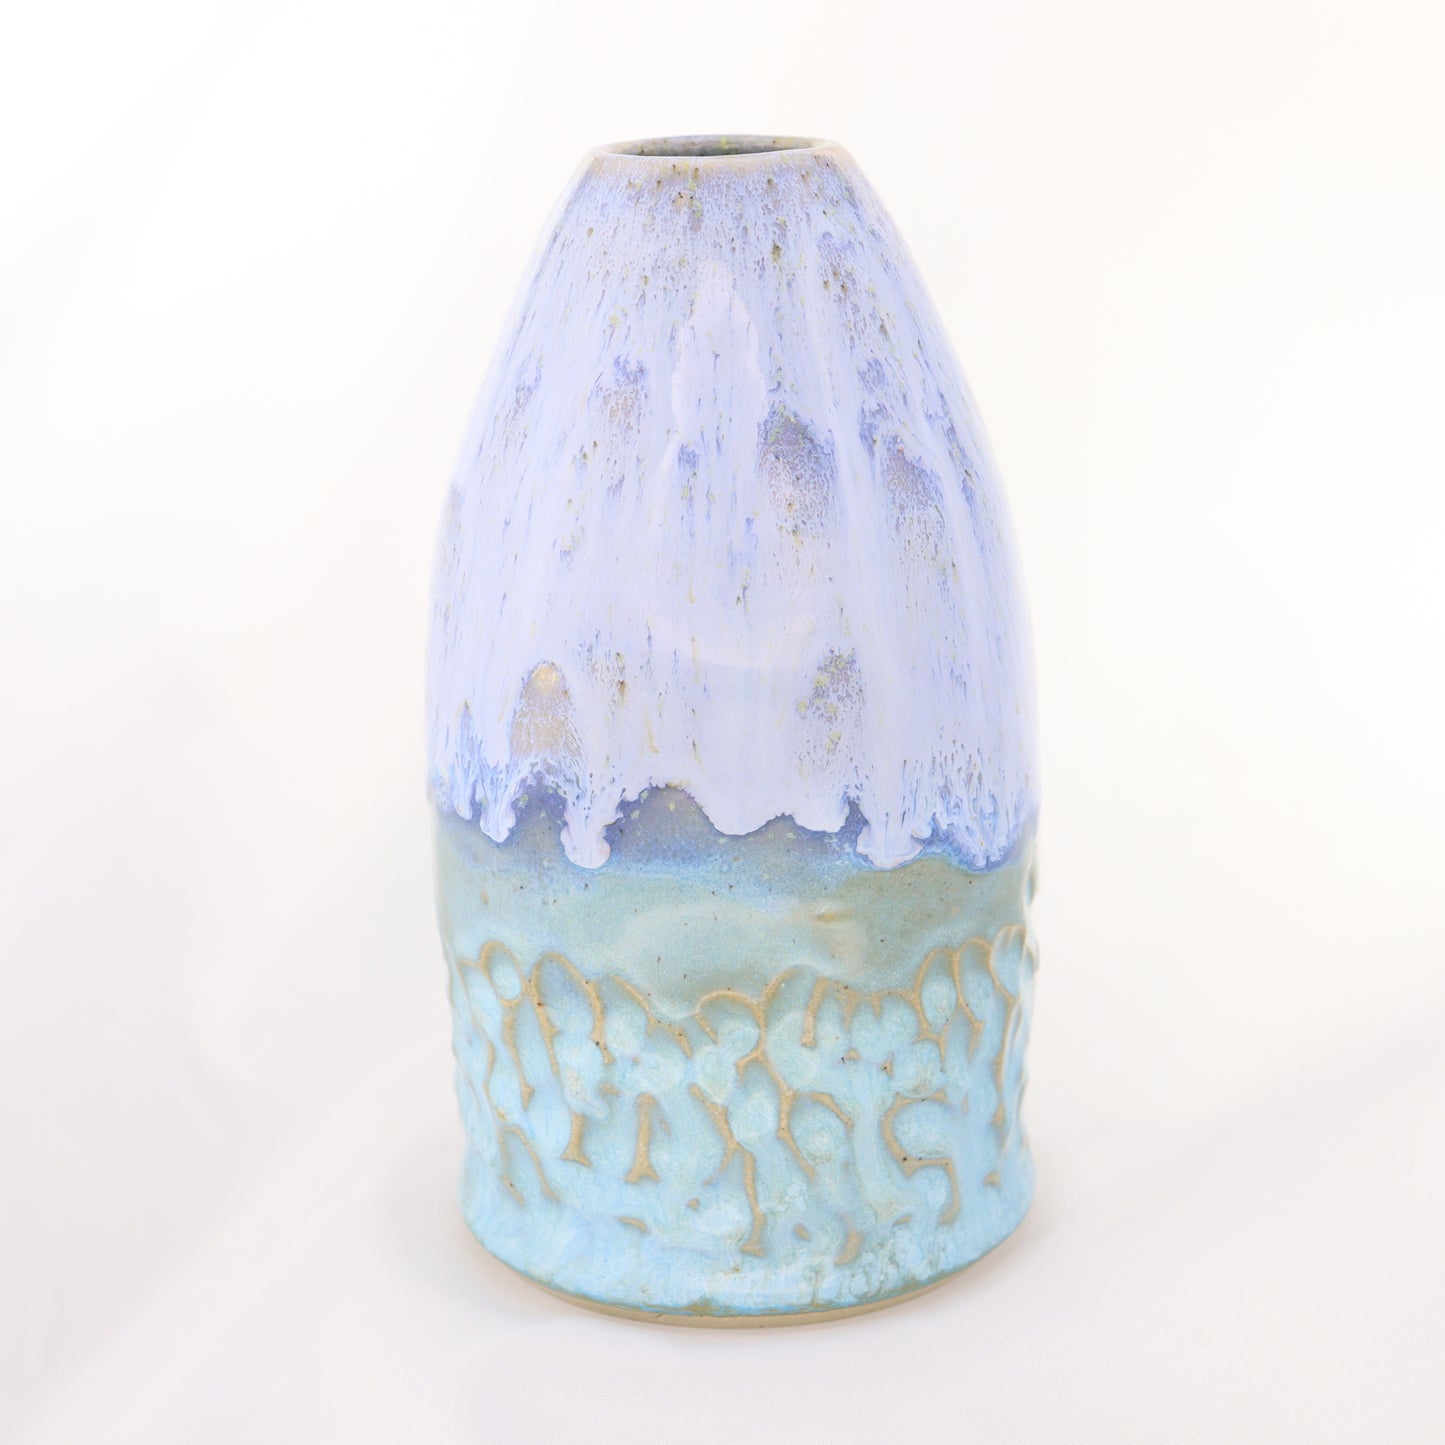 Soap / Lotion Bottle - Lavender Dreams